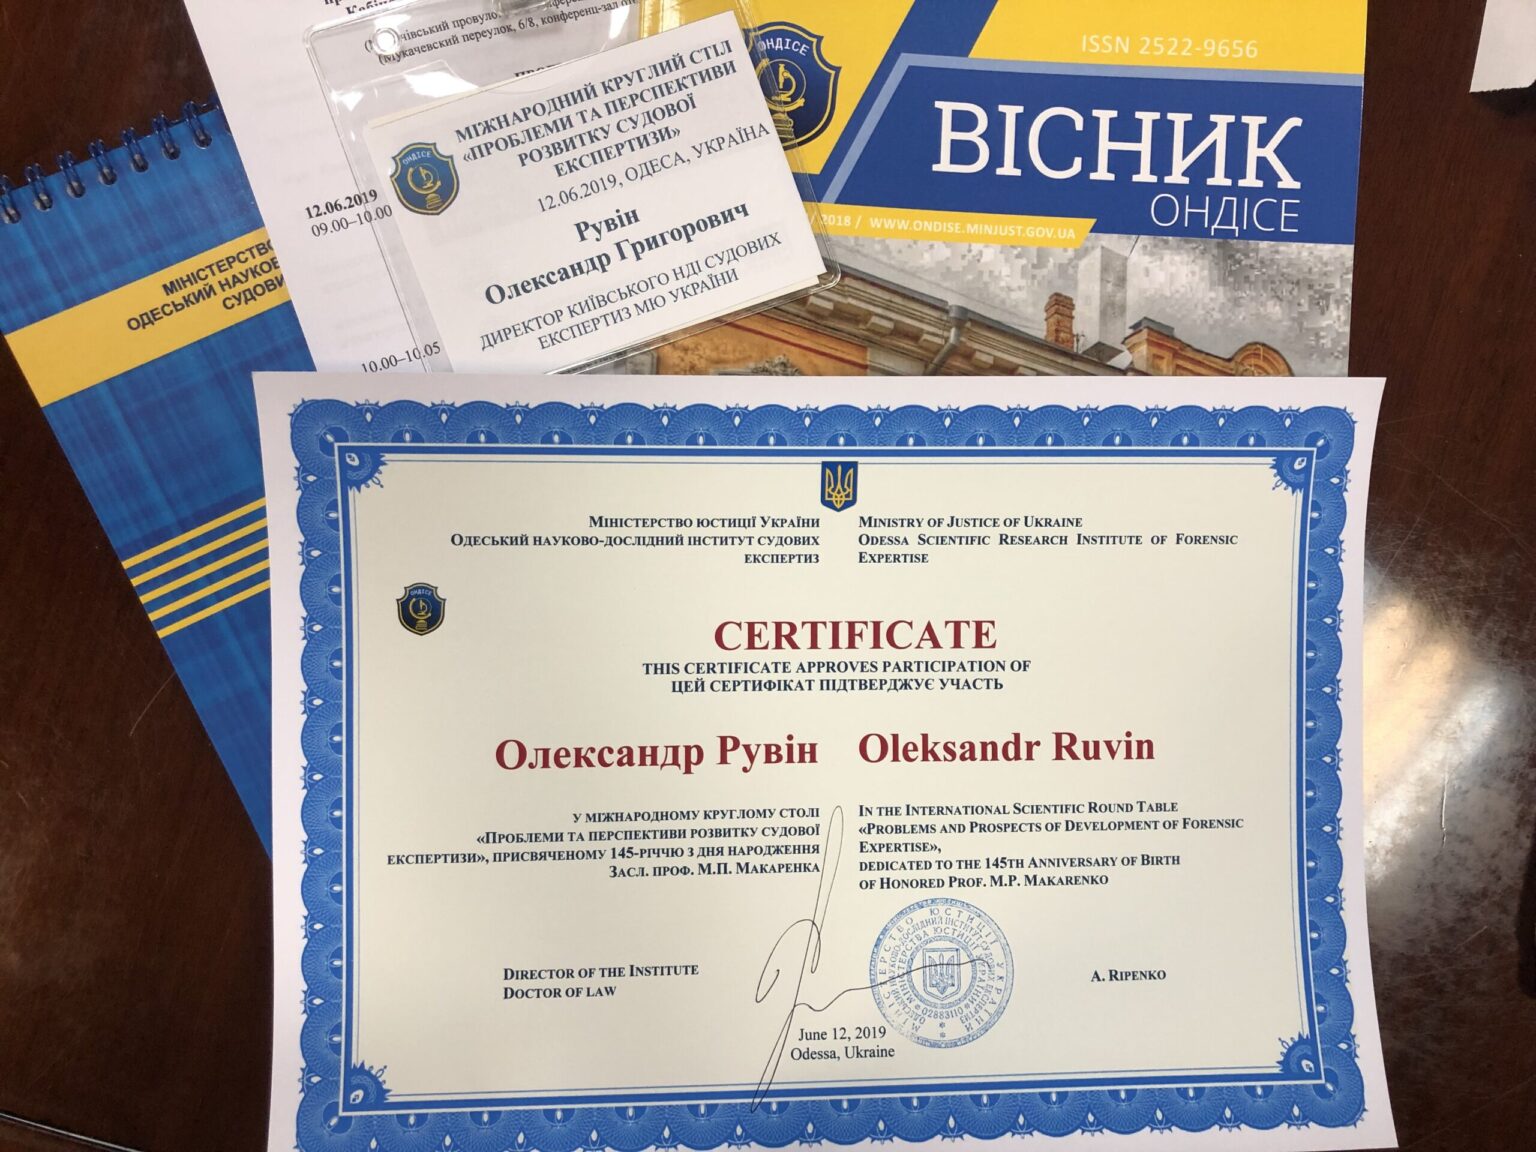 Сертифікат учасника, який було видано Олександру Рувіну, директору КНДІСЕ